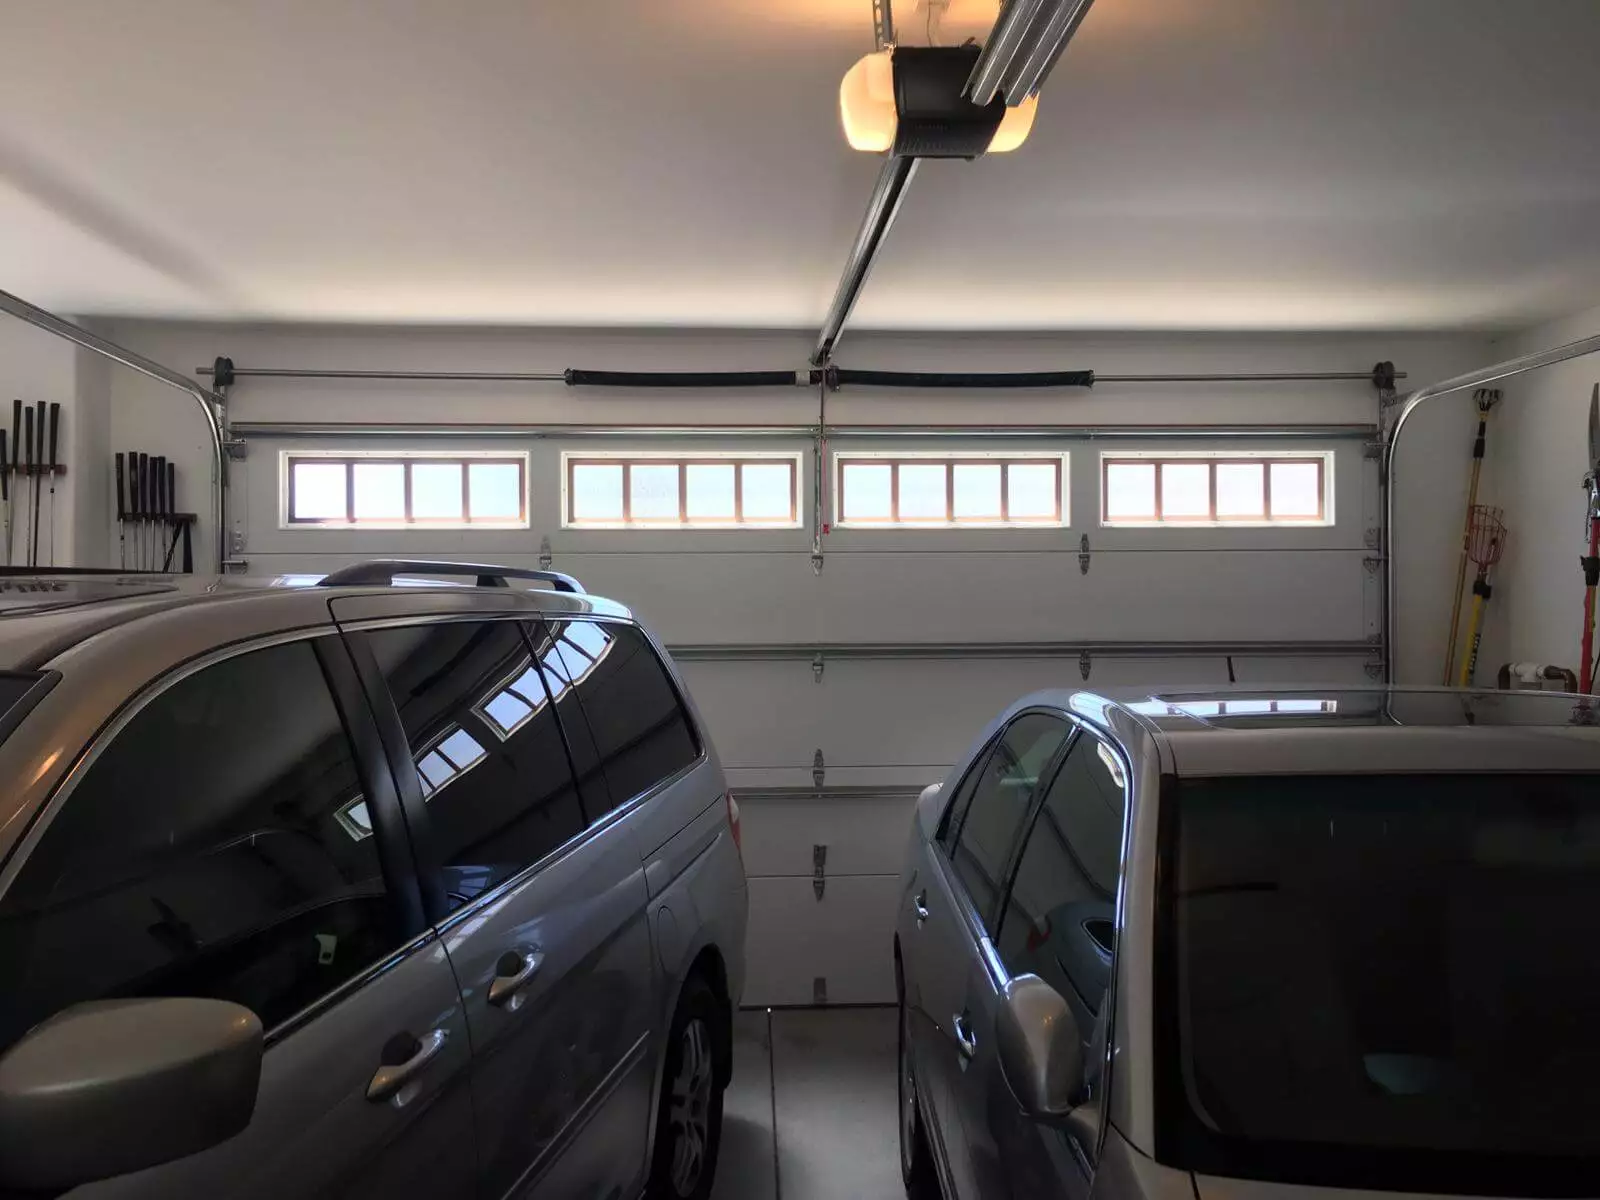 Faulty-Garage-Door-Opener-Repair